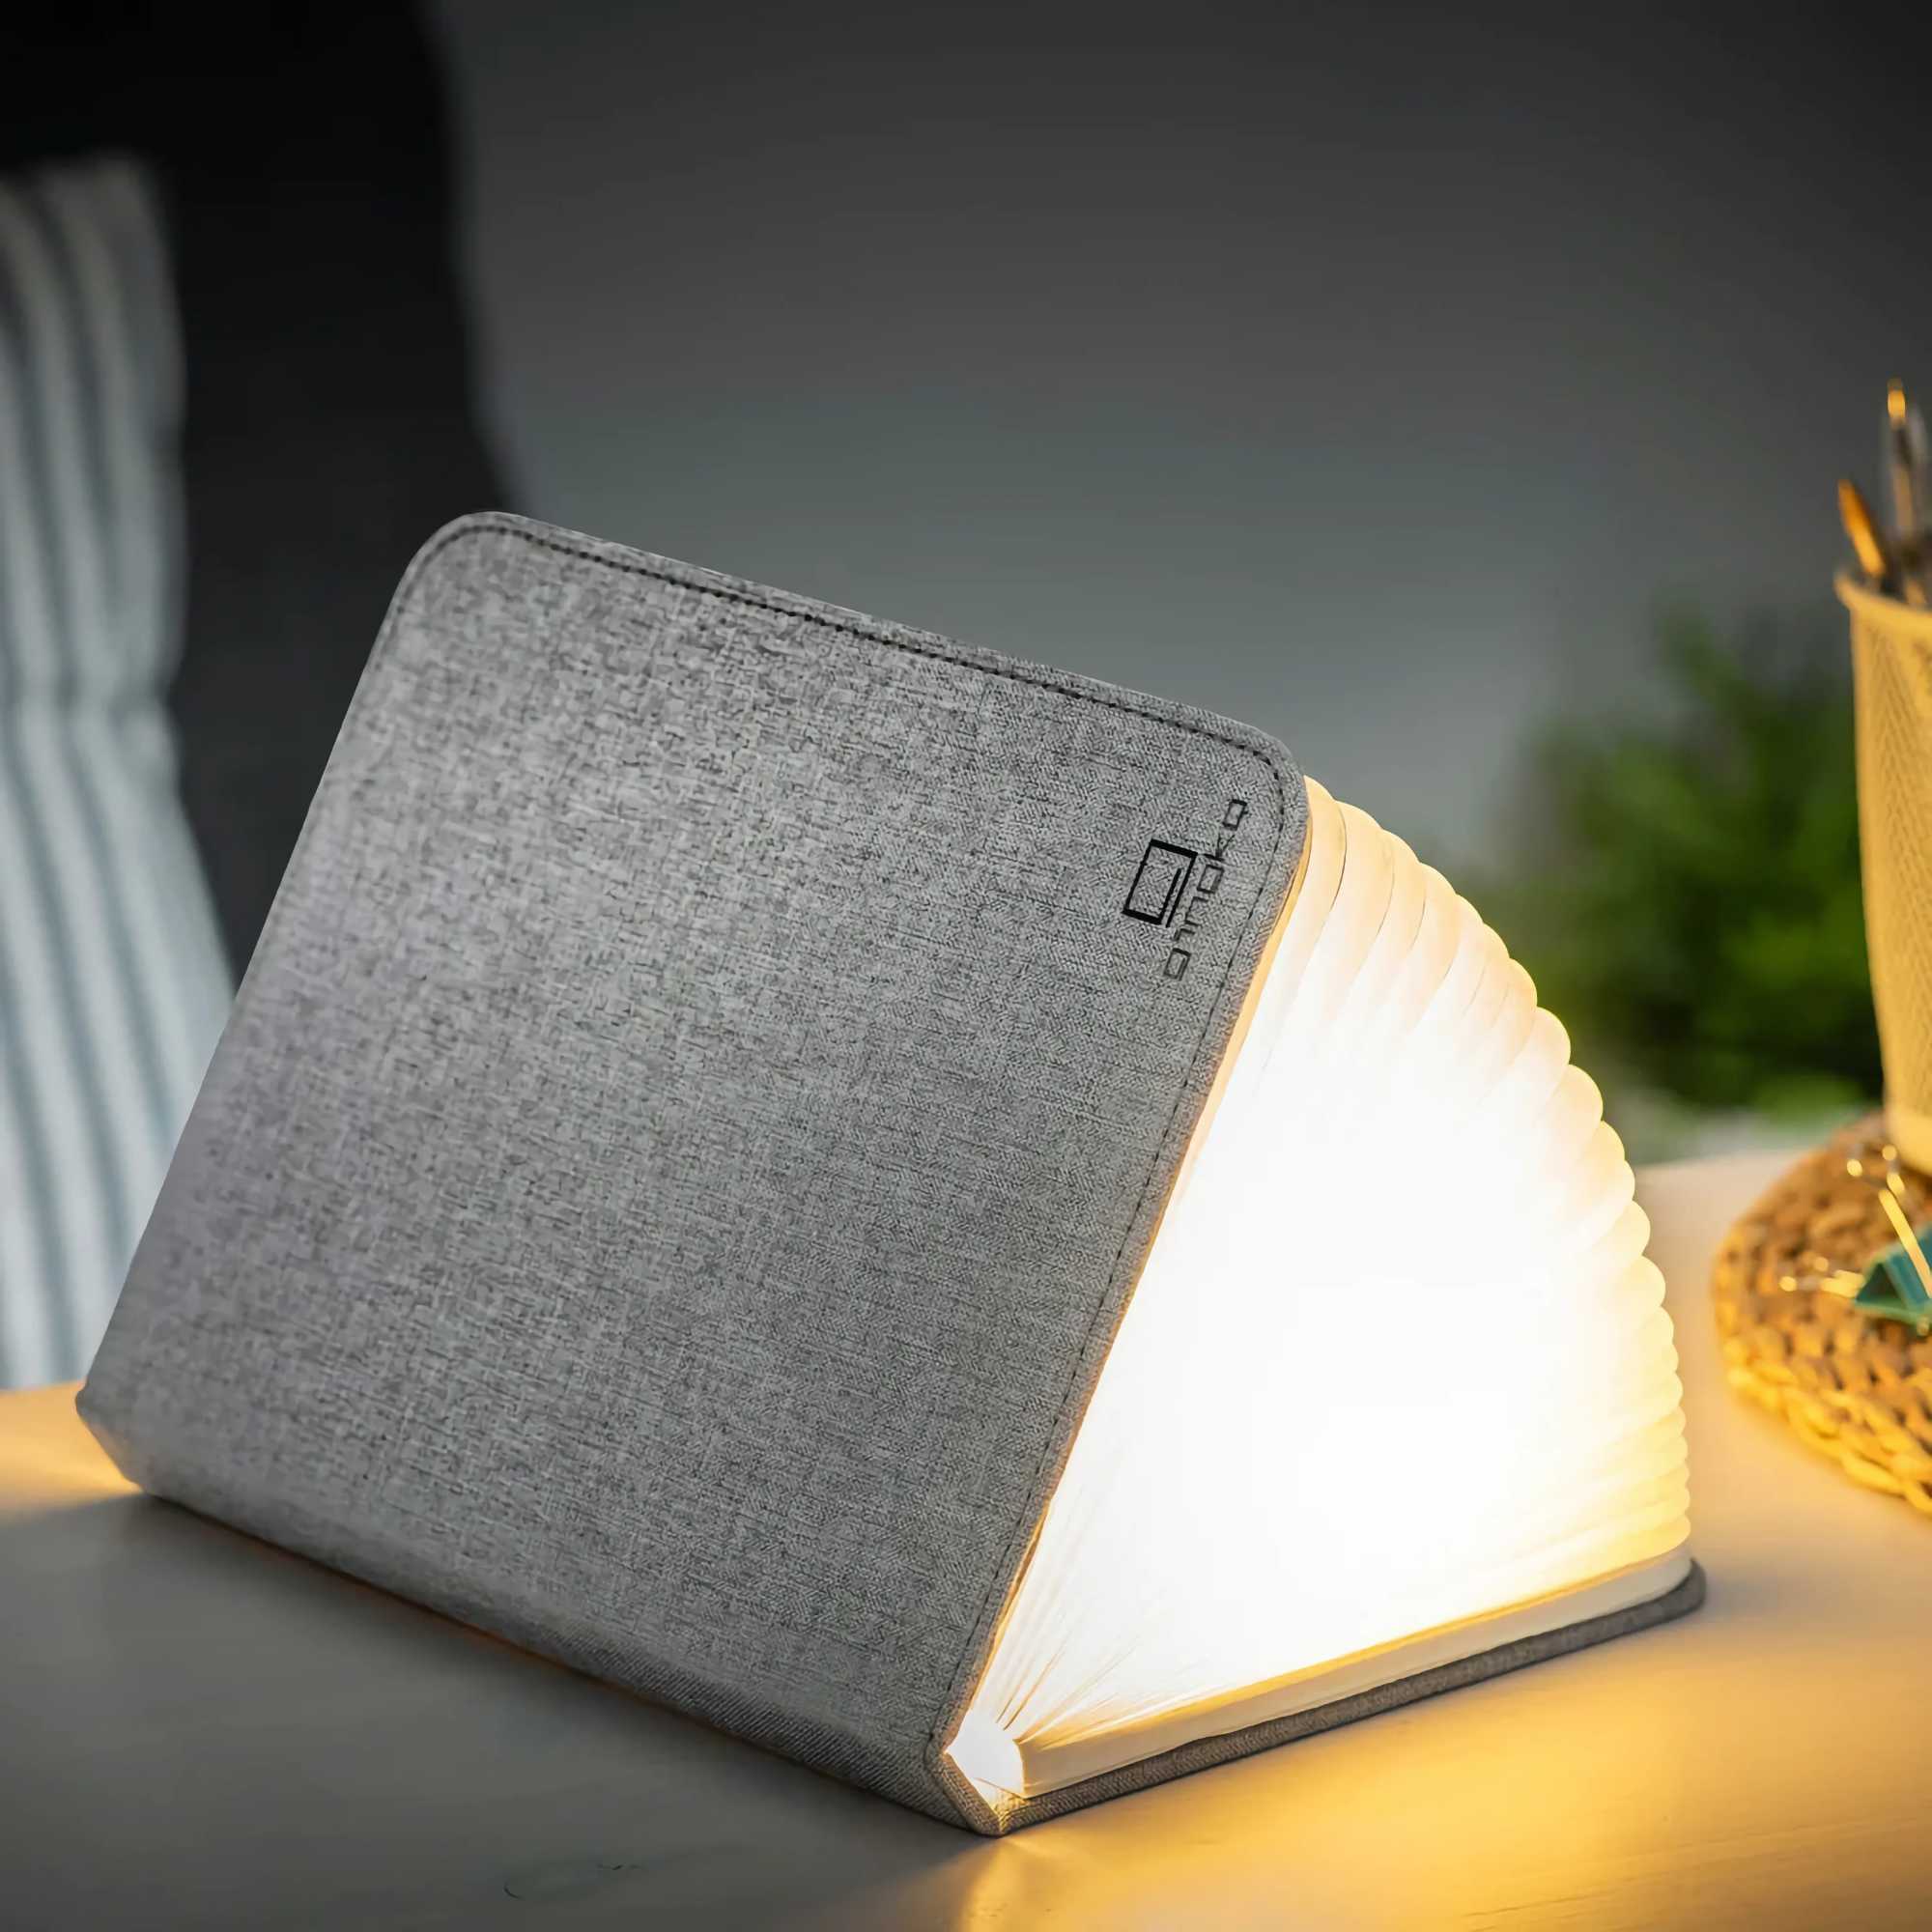 Gingko Smart Booklight Mini , Urban Grey Fabric